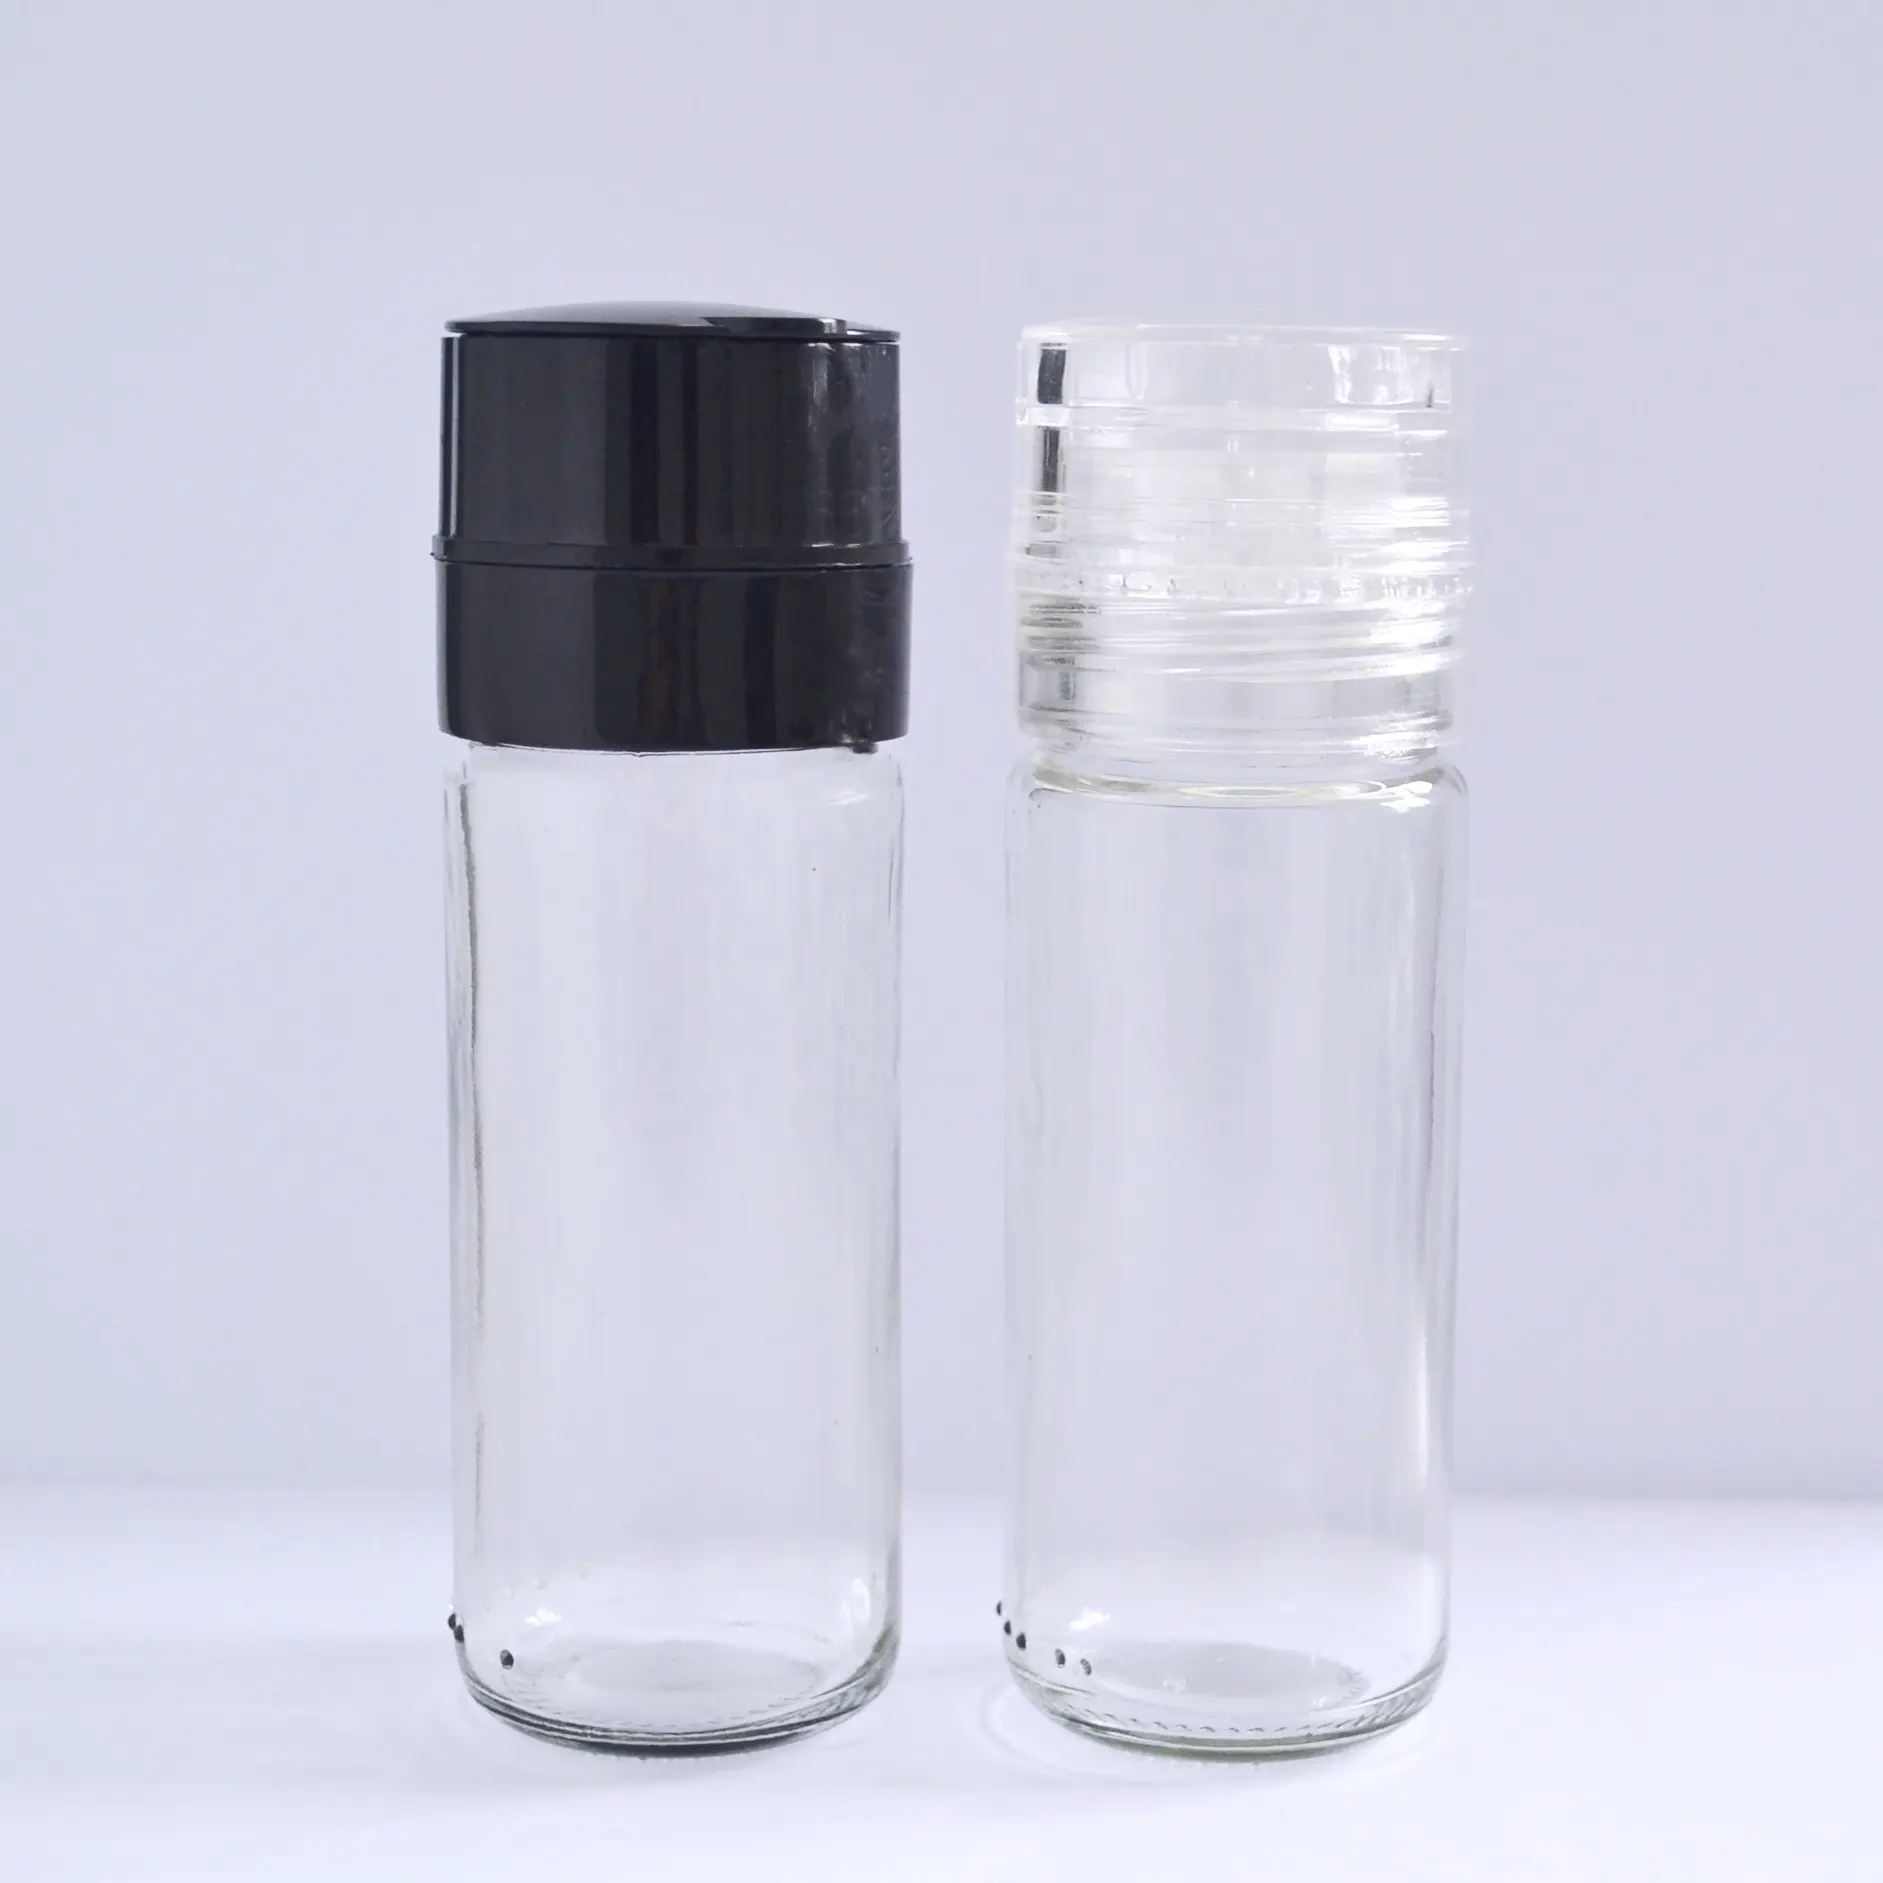 Gewürzmühle Flasche Handbuch Kunststoff Salz-und Pfeffermühle Kappe Kräuter mühle Deckel Set mit 100 ml Glas